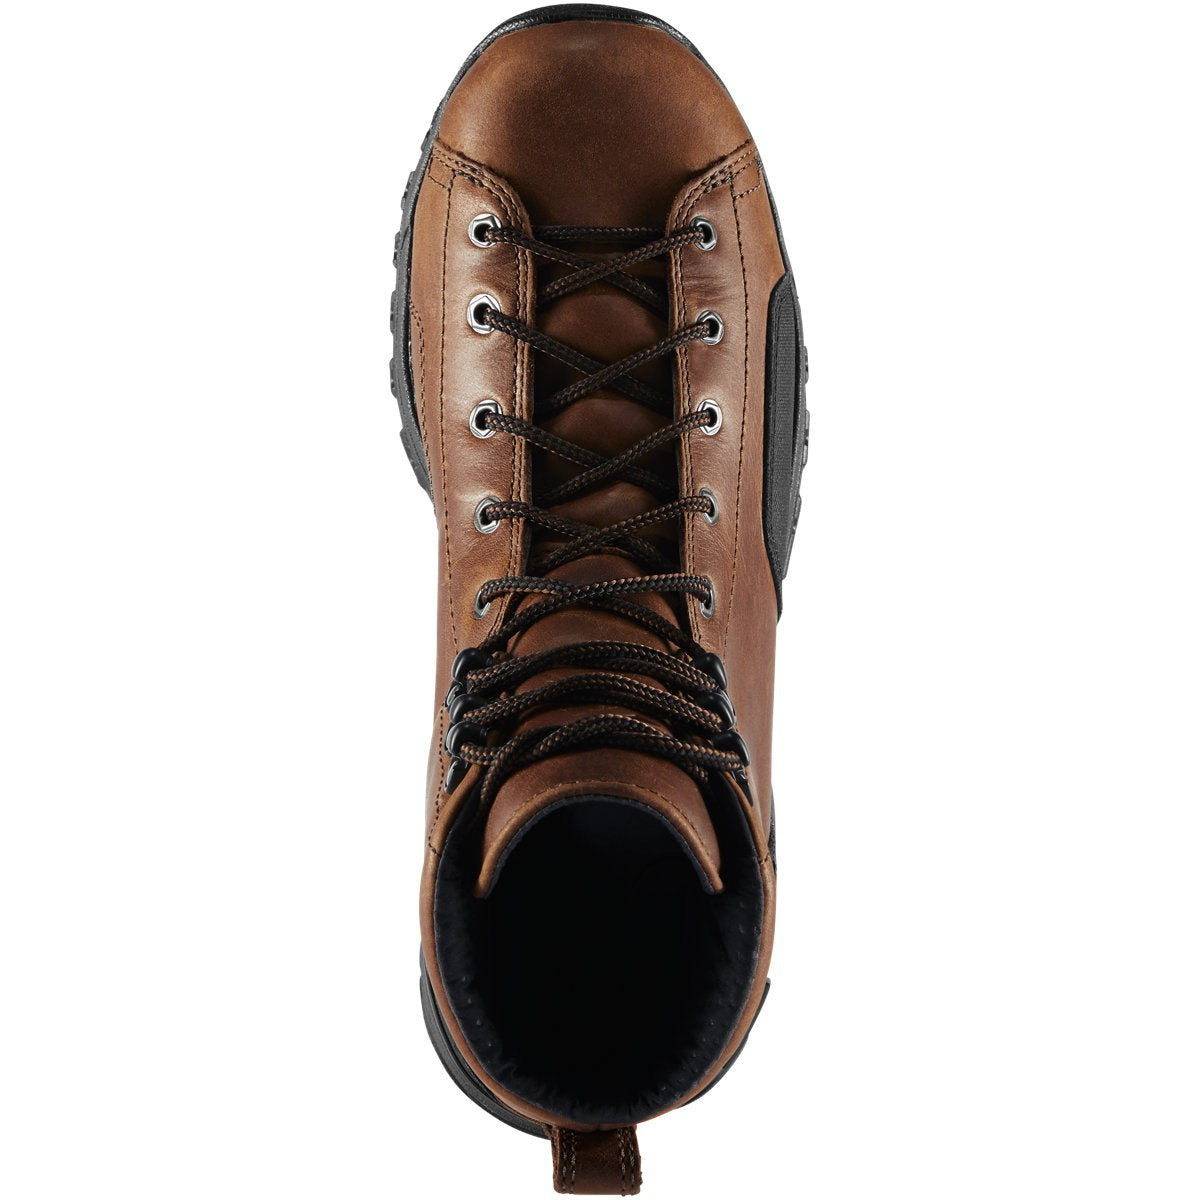 Danner Men's Stronghold 6" Waterproof Work Boot -Brown- 16722  - Overlook Boots